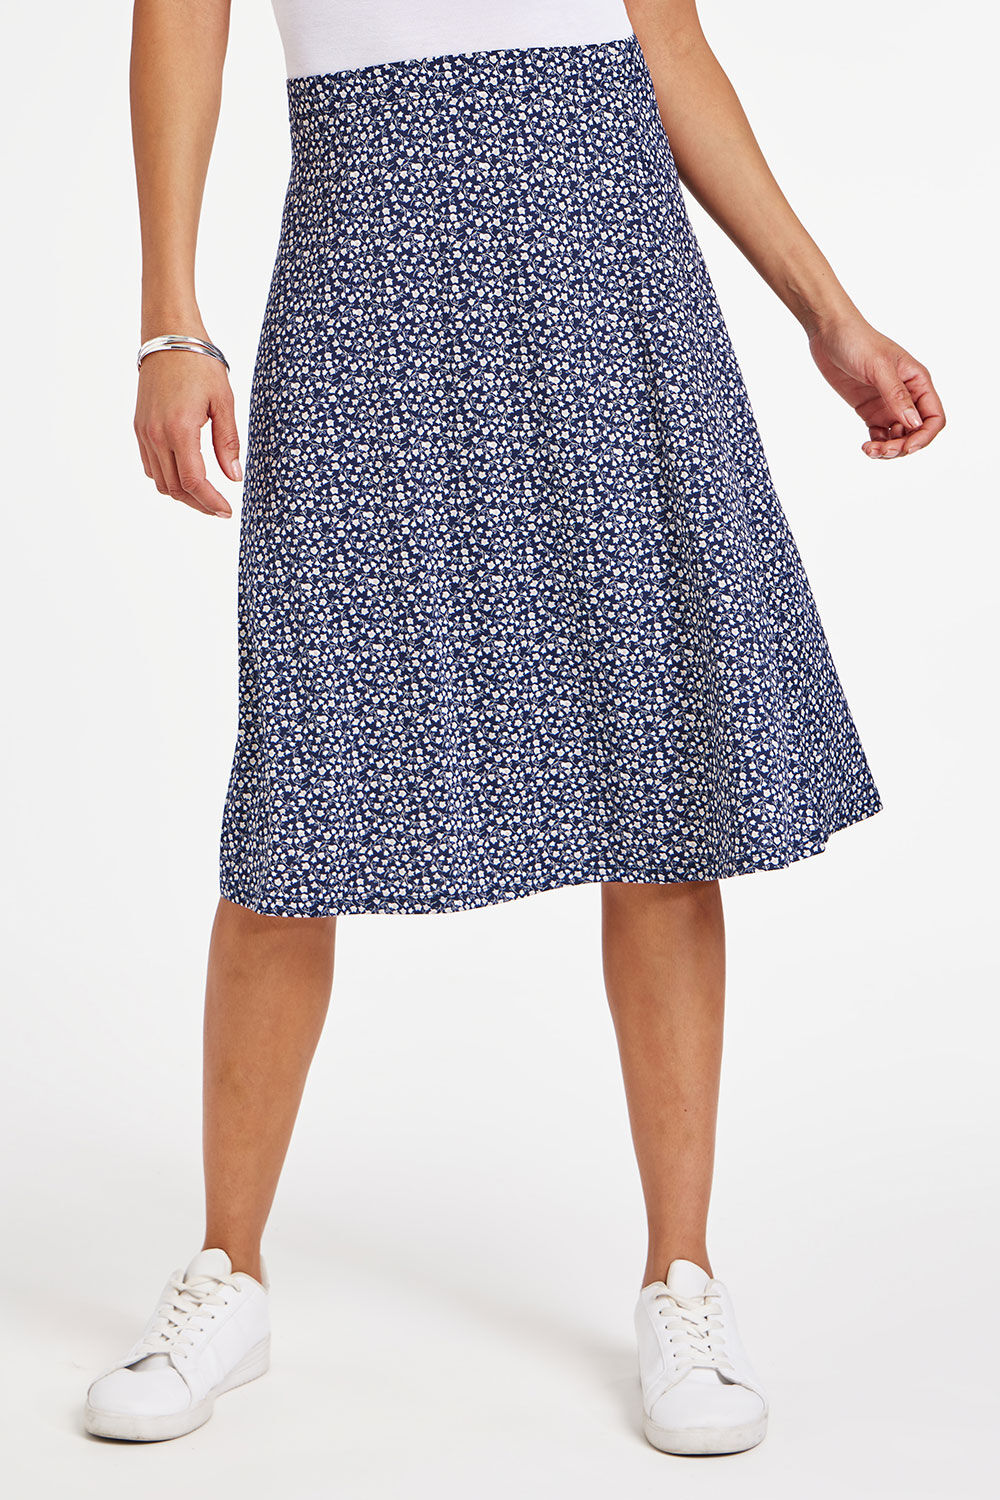 Bonmarche Navy Ditsy Print Flippy Skirt, Size: 12